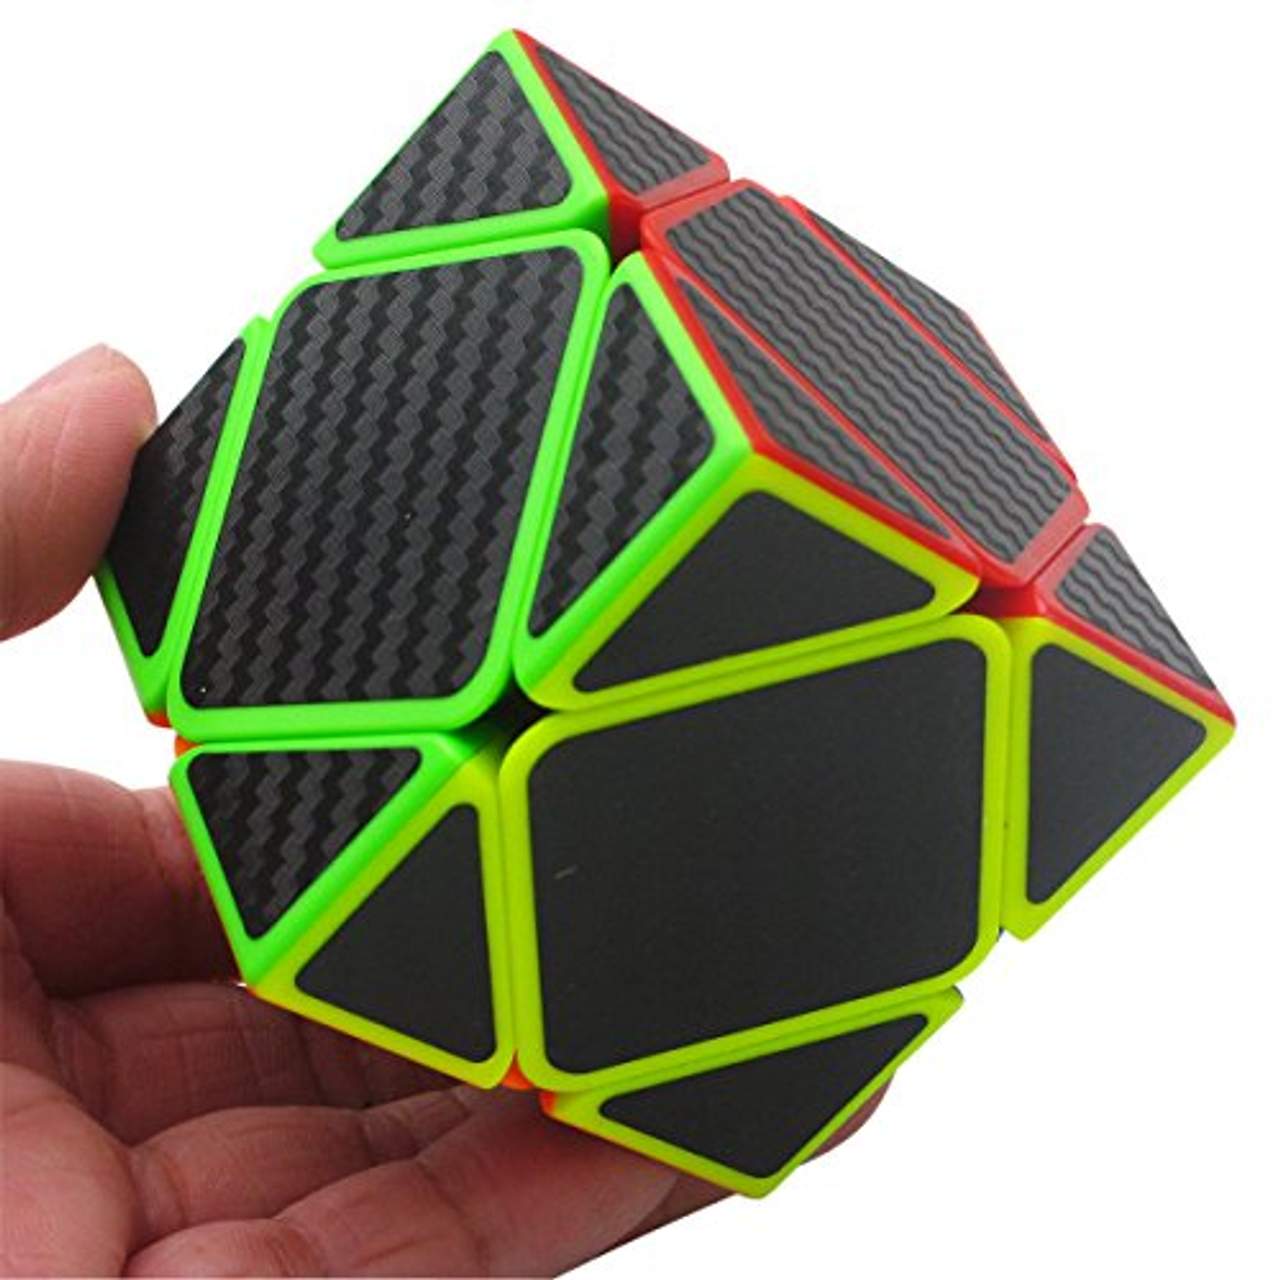 Coolzon Zauberwürfel Skewb Speed Cube Würfel Carbon Faser Aufkleber